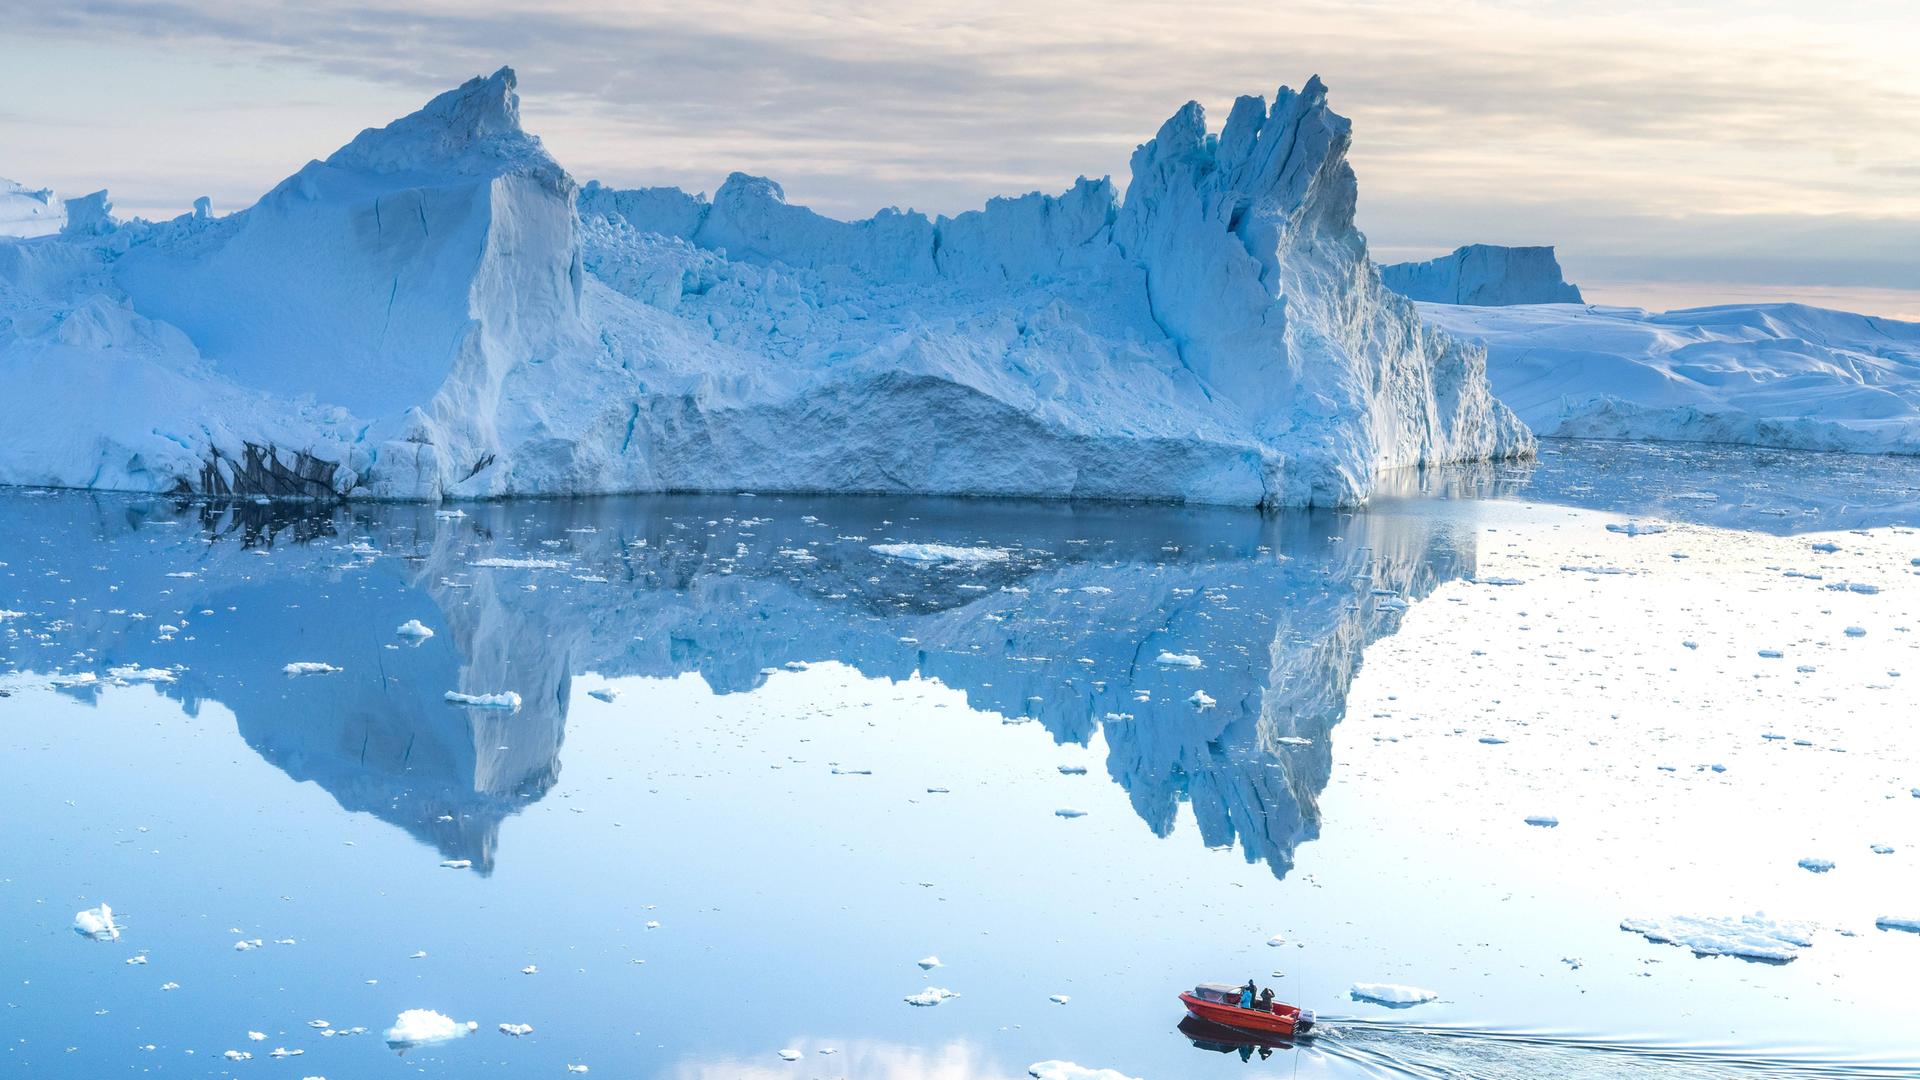 Eisschmelze in Grönland. Eisberge und ein kleines Schlauchboot, das im Wasser fährt.